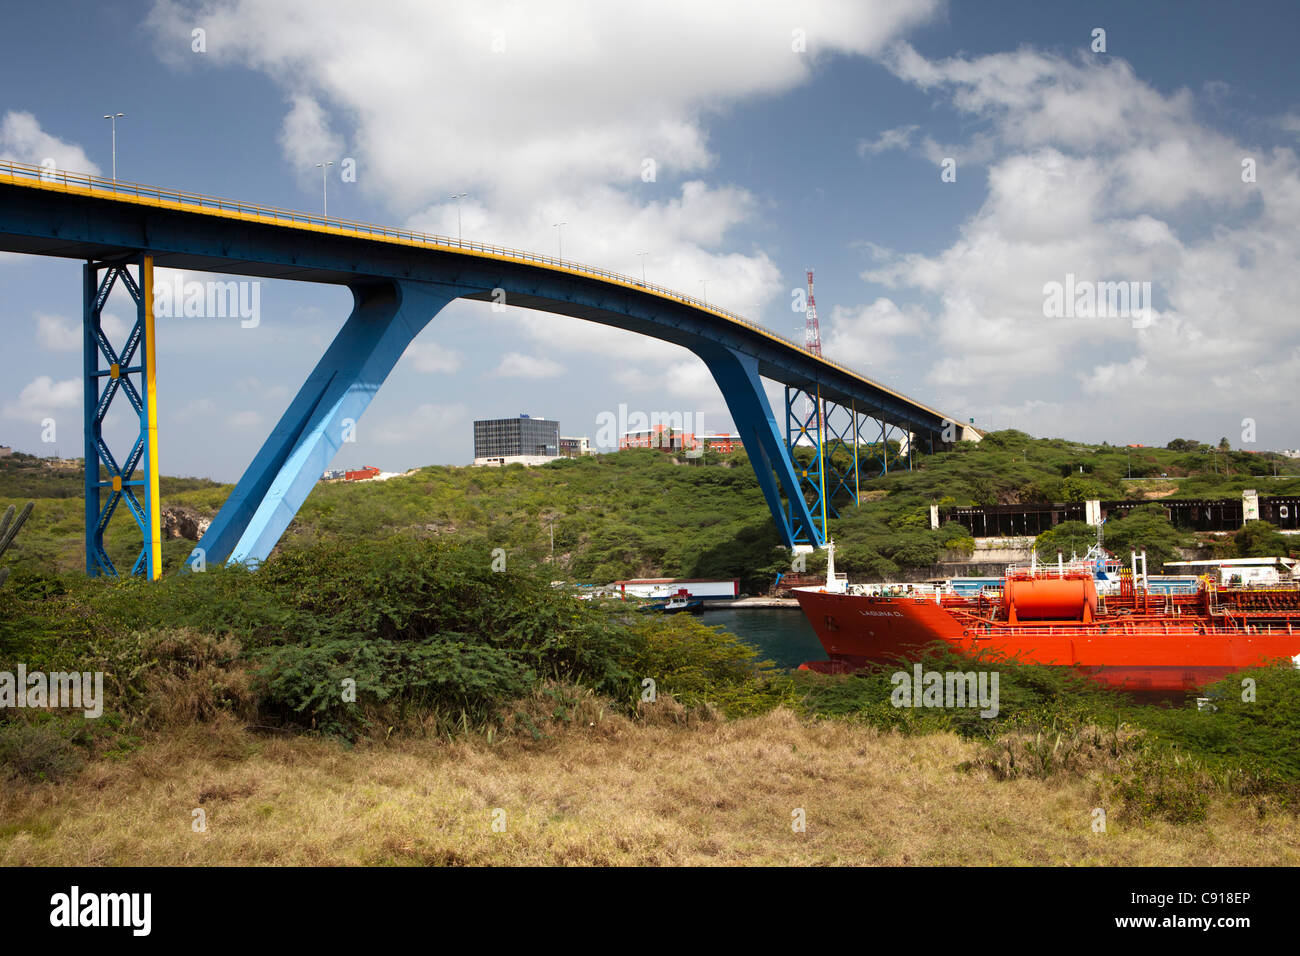 Curaçao, île des Caraïbes, indépendante des Pays-Bas depuis 2010. Willemstad. En passant par les pétroliers Juliana bridge. Banque D'Images